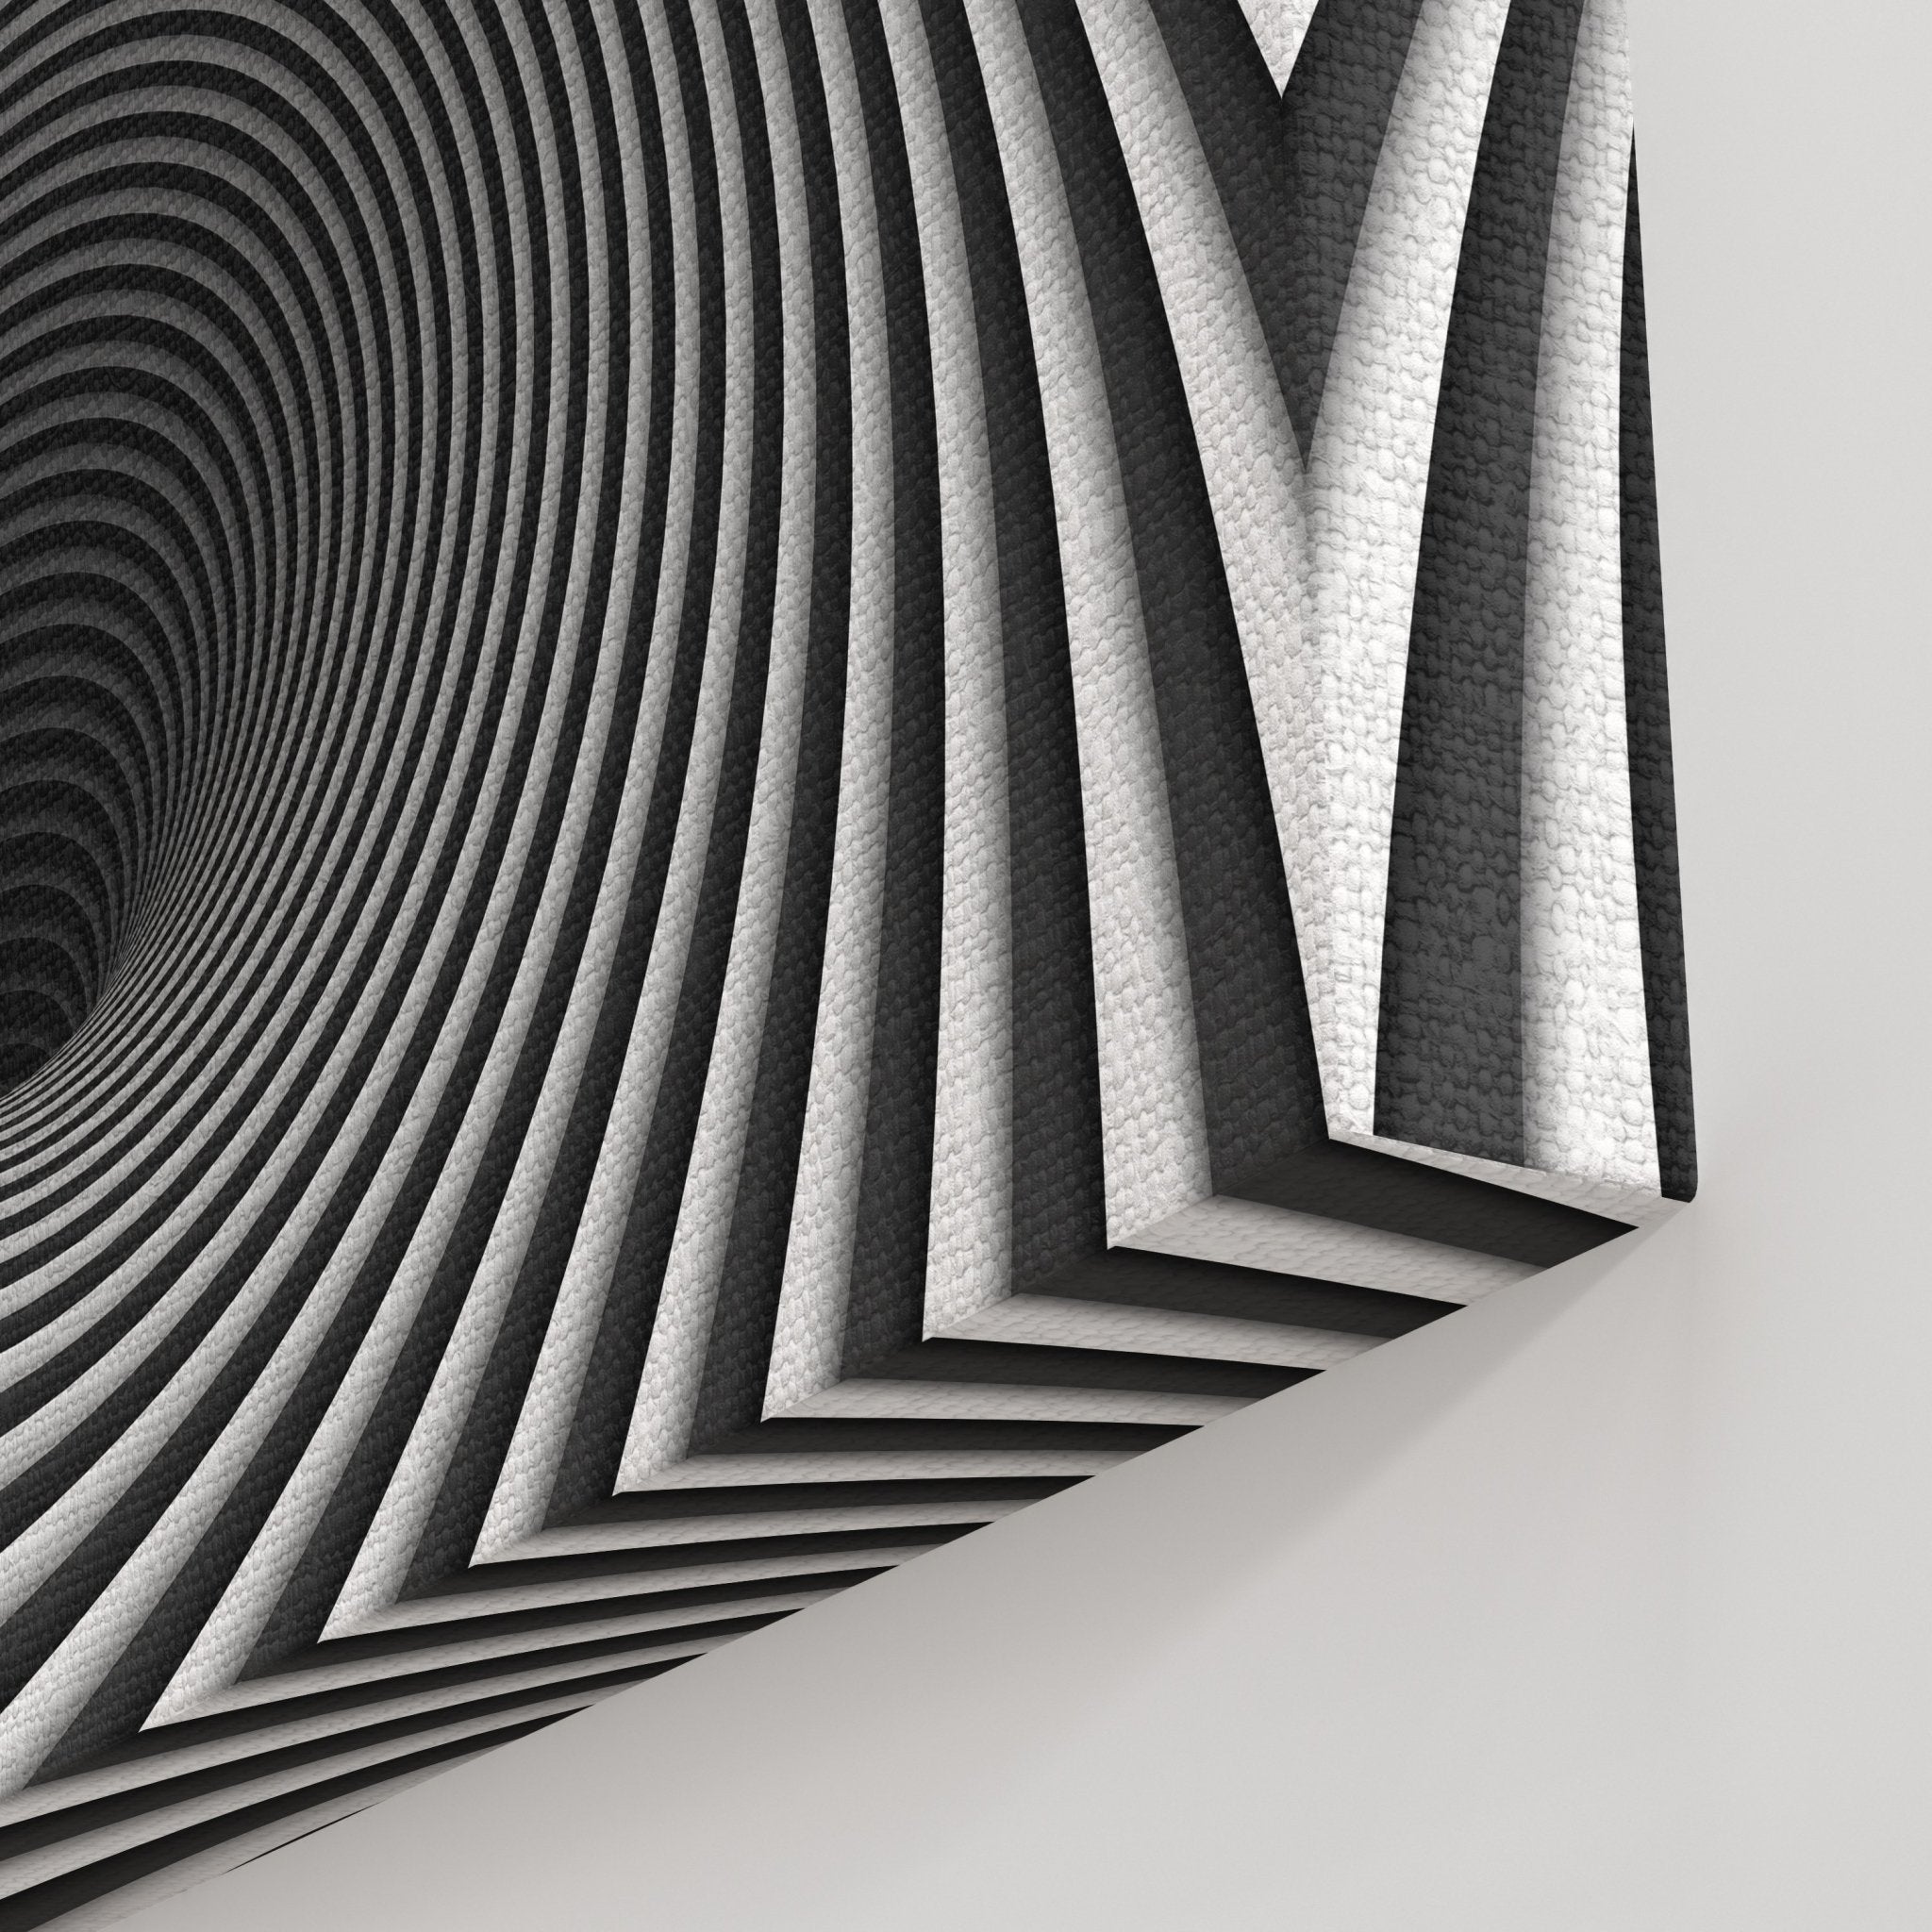 Foto obraz na płótnie - Abstrakcja, tunel i spirala (czarno-biały) - Gallart.pl